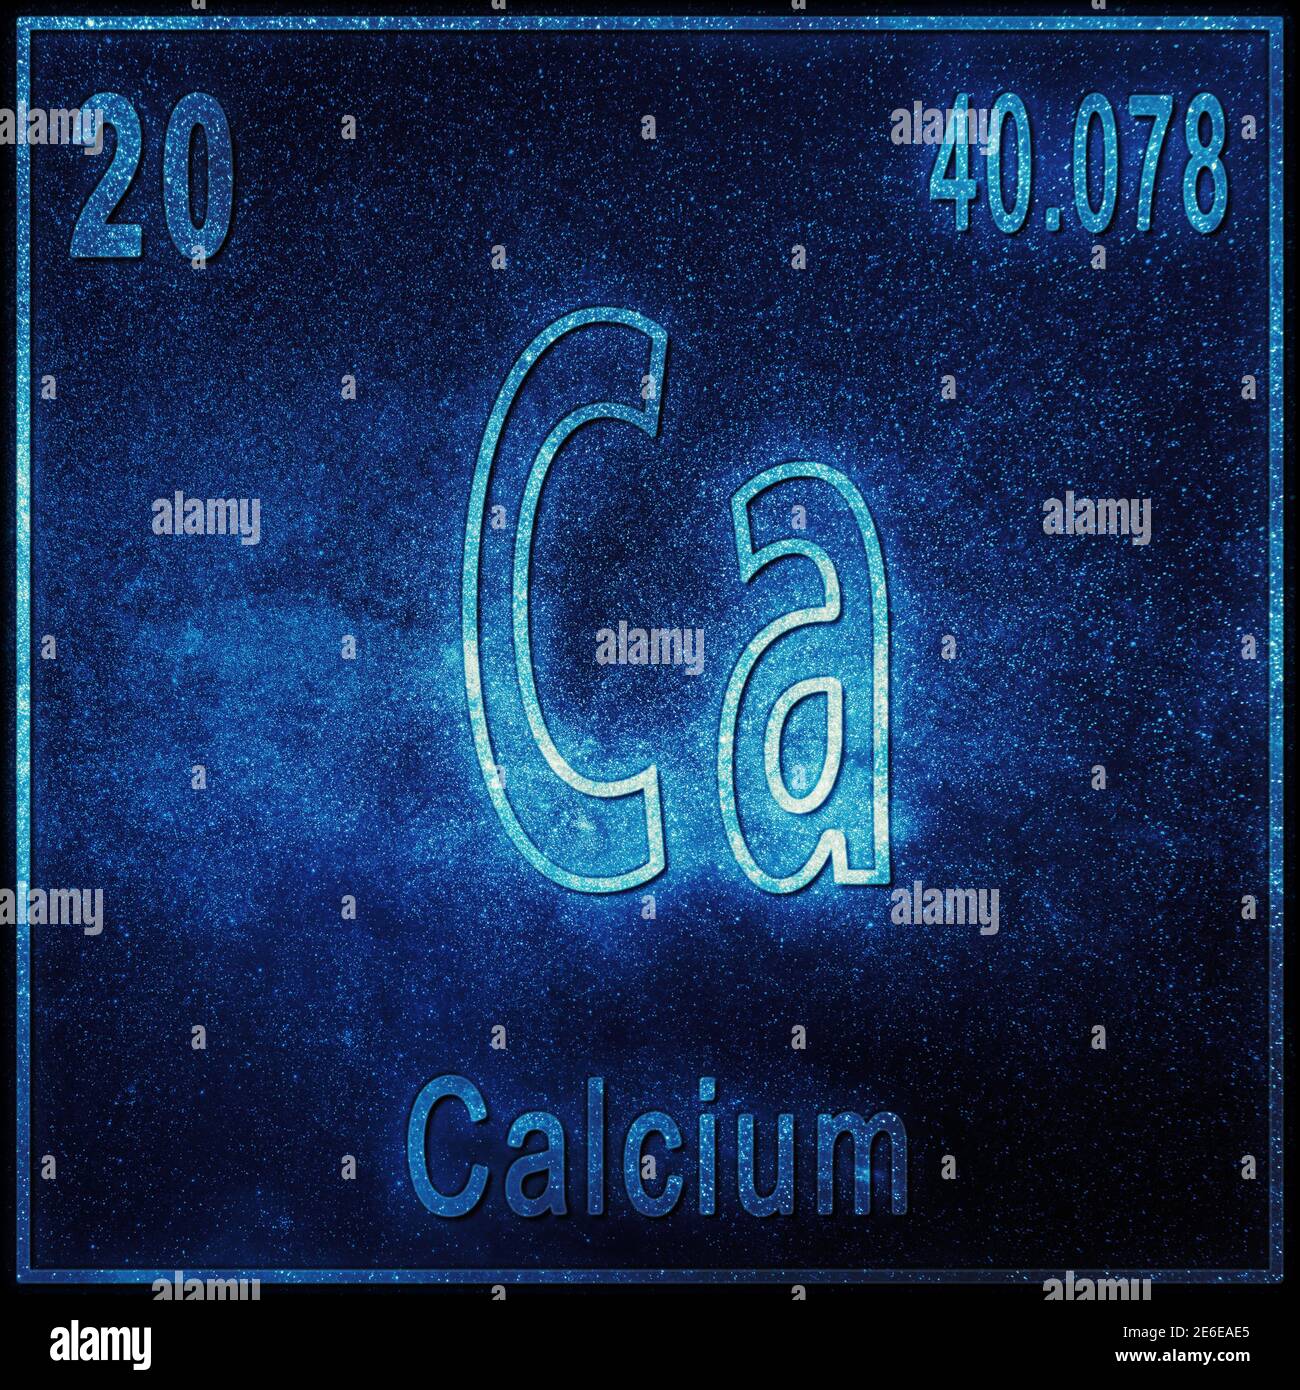 calcium atomic mass